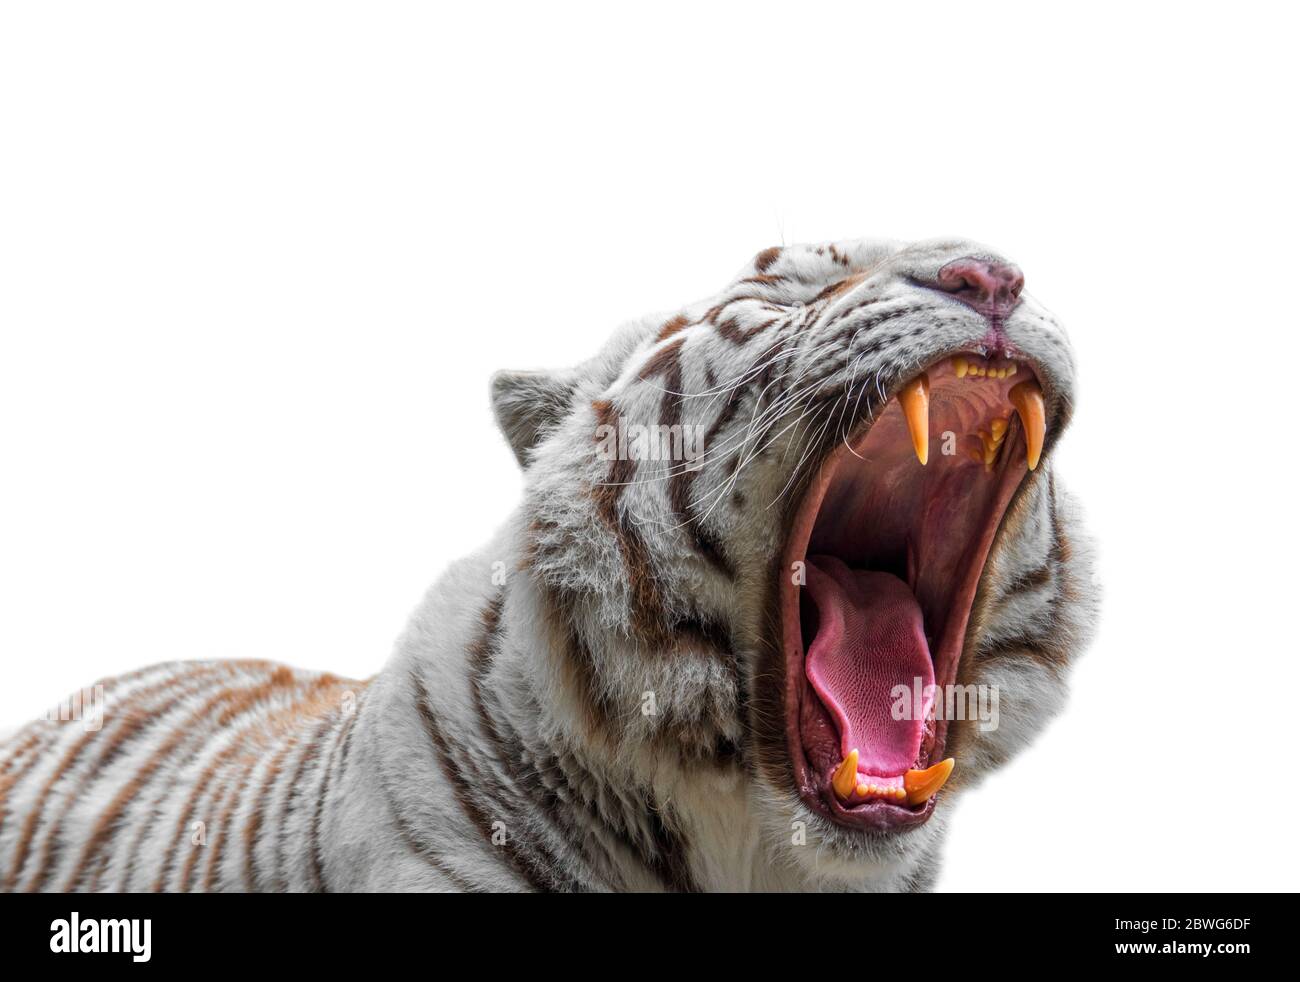 Gros plan de la variante de pigmentation du tigre du Bengale, montrant de grands canines et une langue, contre le tigre blanc grognant / tigre blanchi (Panthera tigris) Banque D'Images